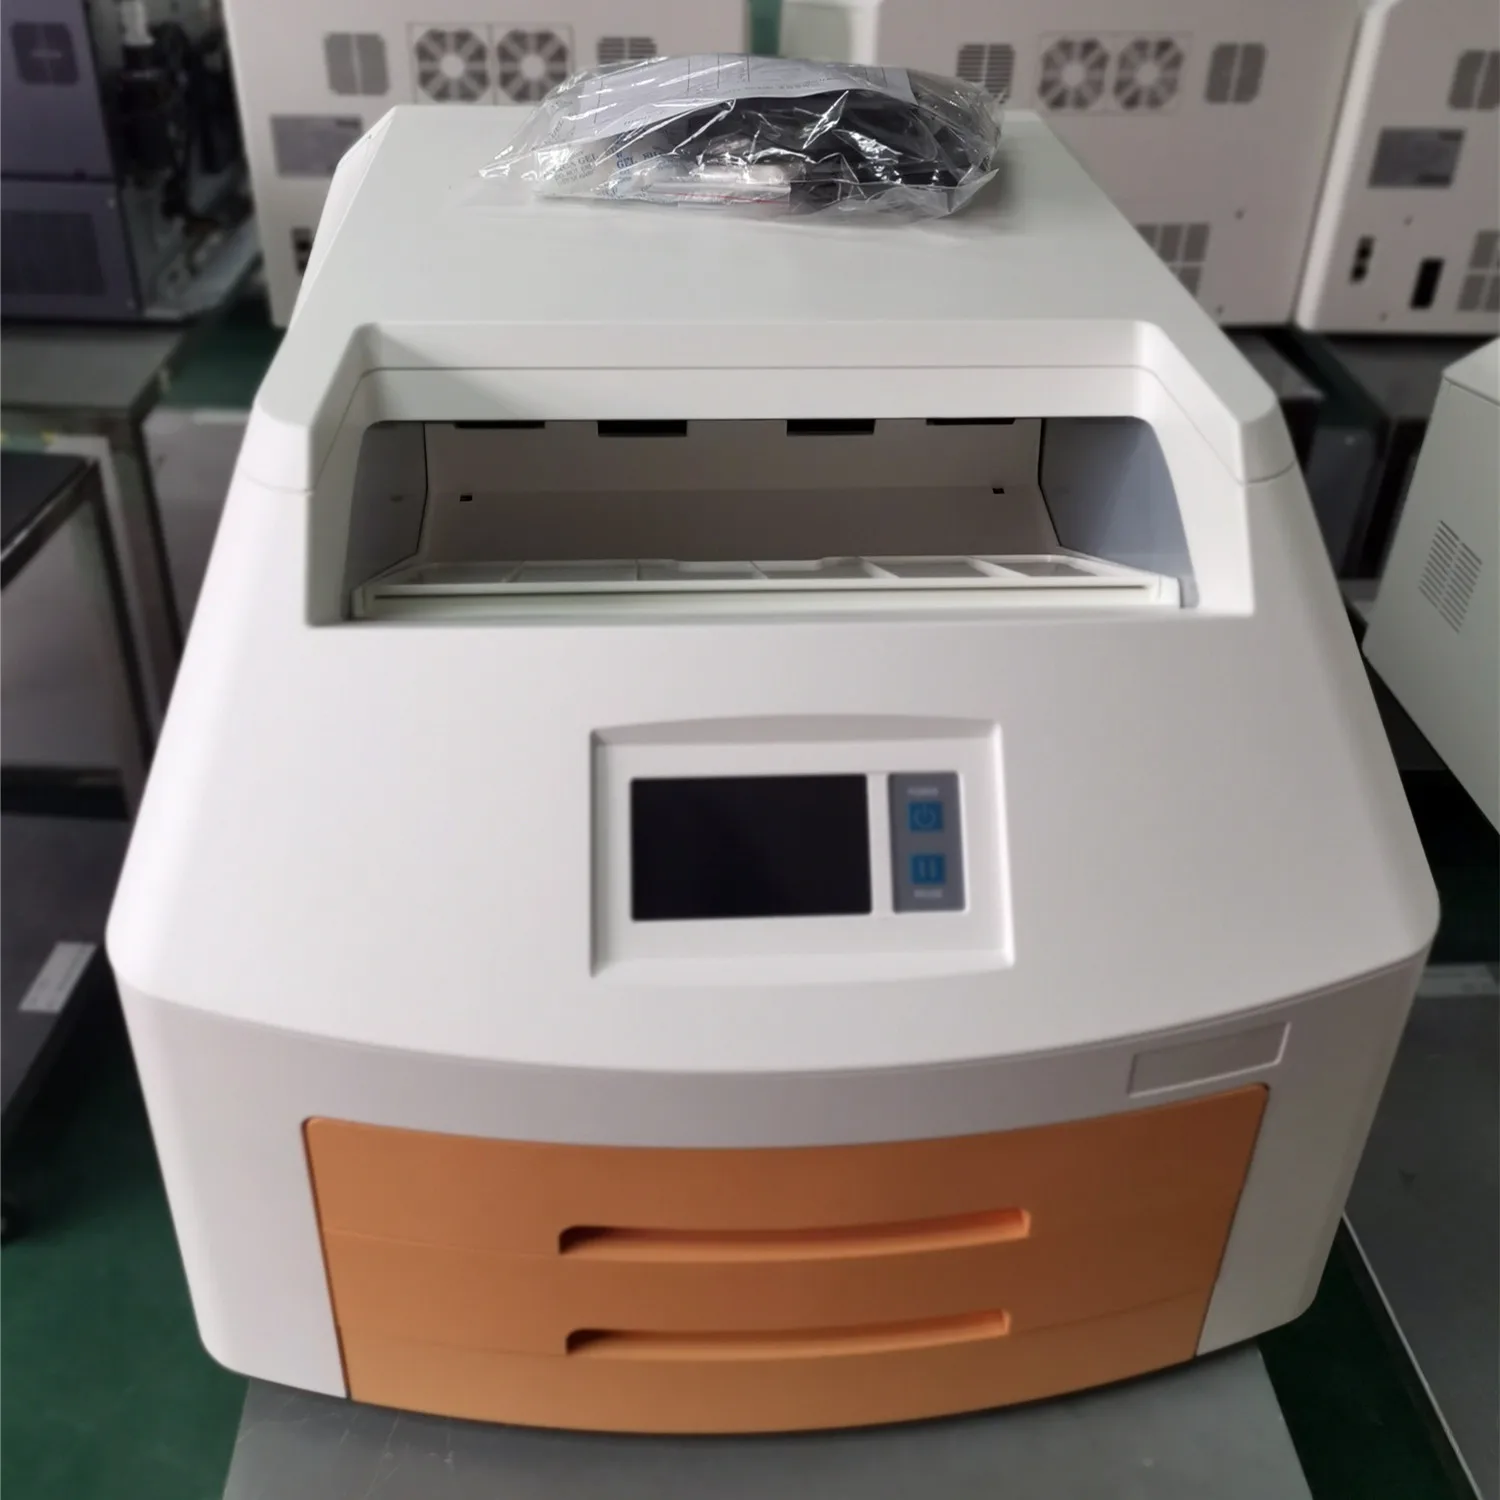 
Самый дешевый сухой пленочный принтер для рентгена/медицинского пленочного принтера, точный MSDY03  (1600200243503)